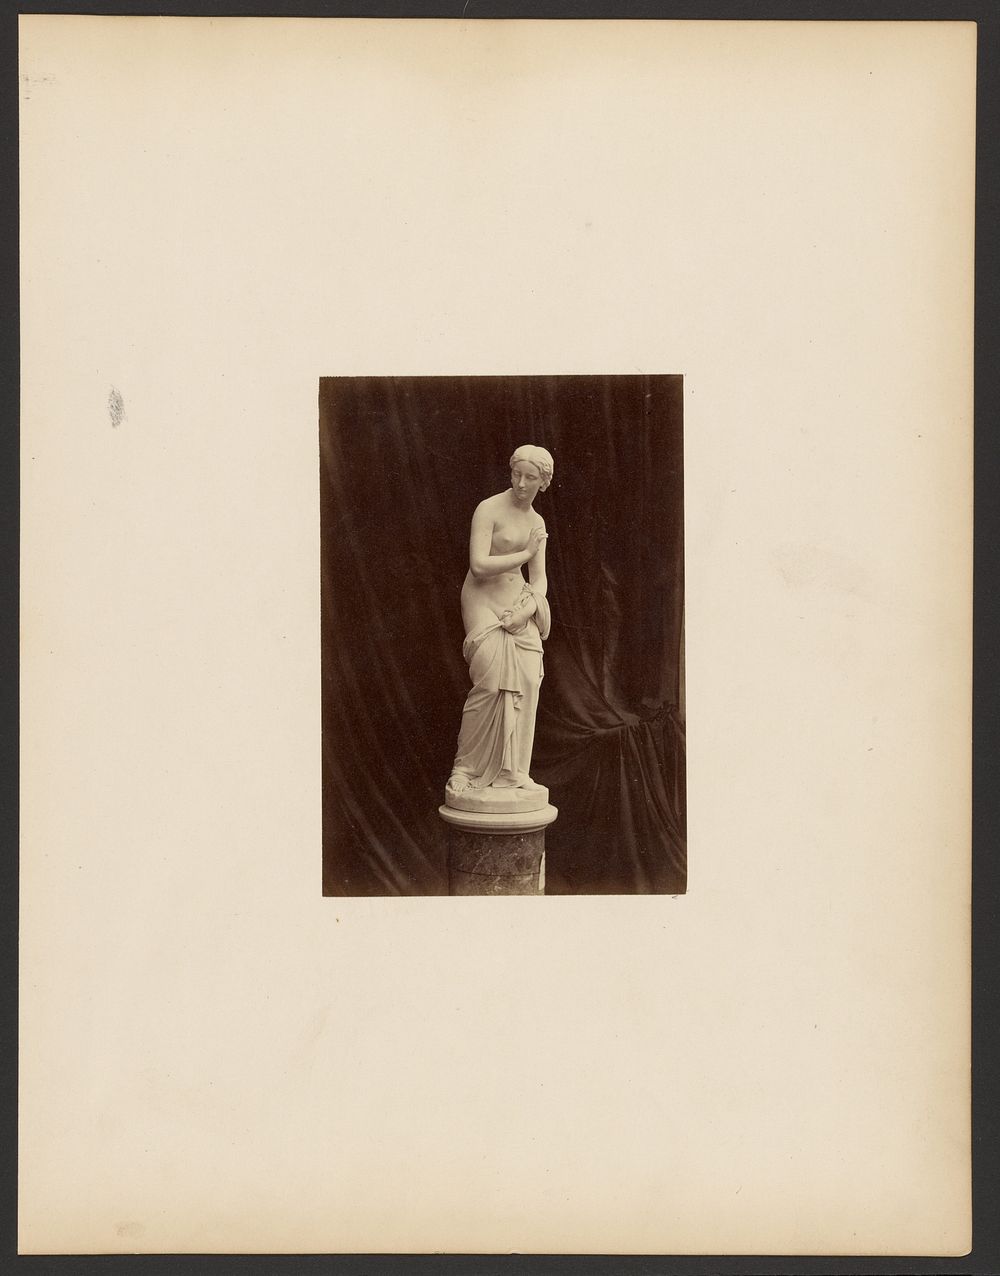 Sculpture of nude female figure